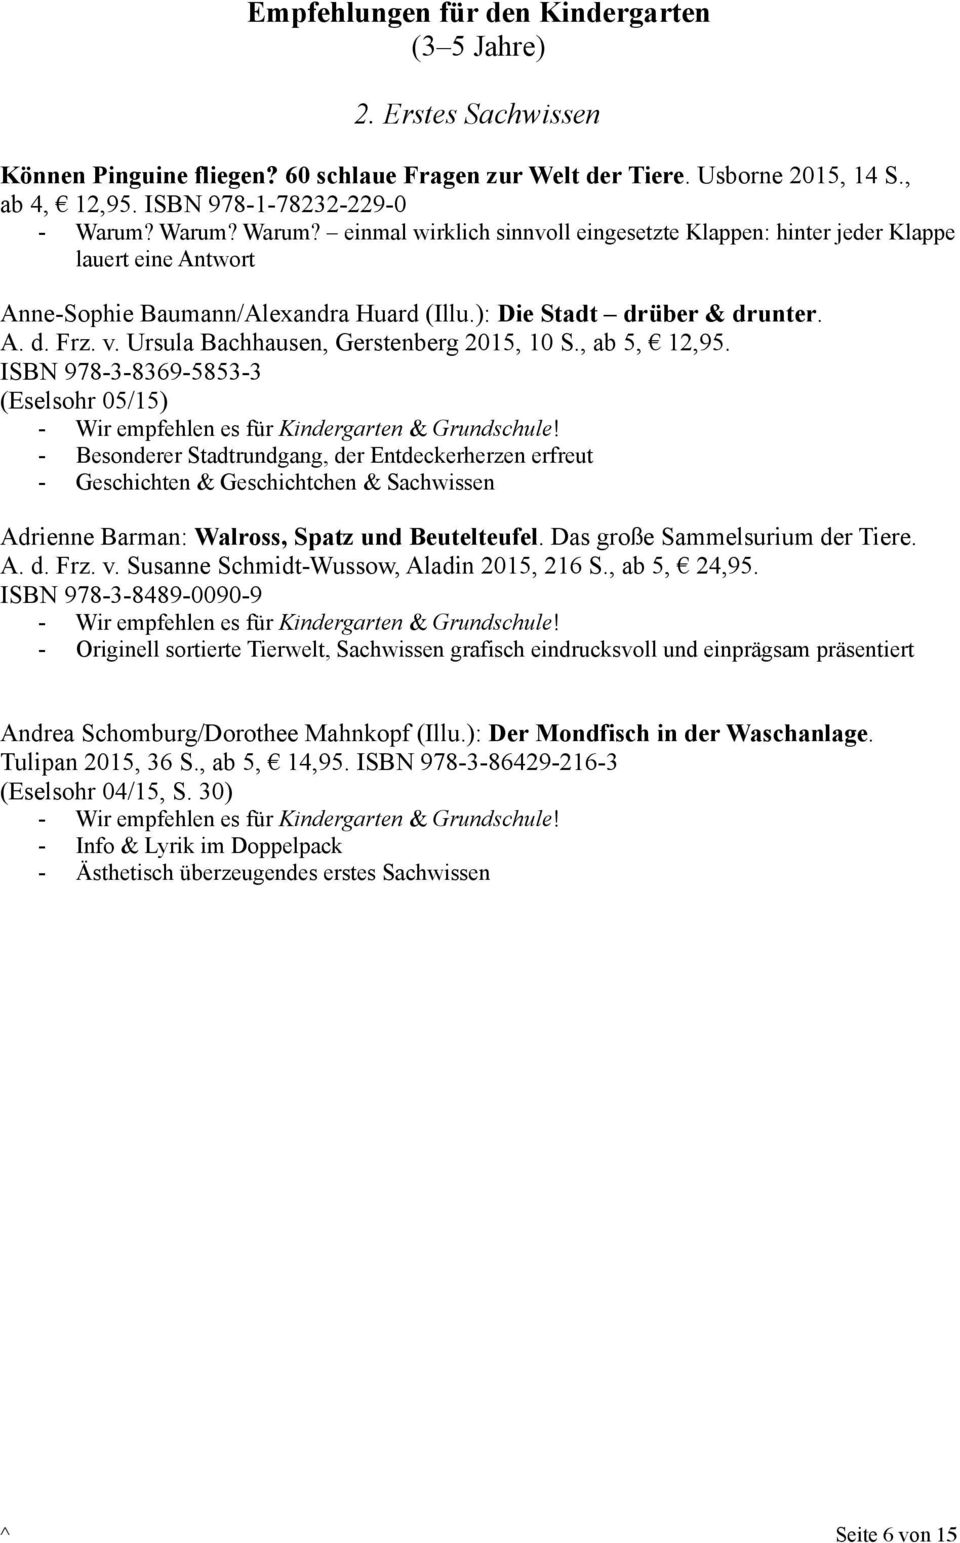 Ursula Bachhausen, Gerstenberg 2015, 10 S., ab 5, 12,95. ISBN 978-3-8369-5853-3 (Eselsohr 05/15) - Wir empfehlen es für Kindergarten & Grundschule!